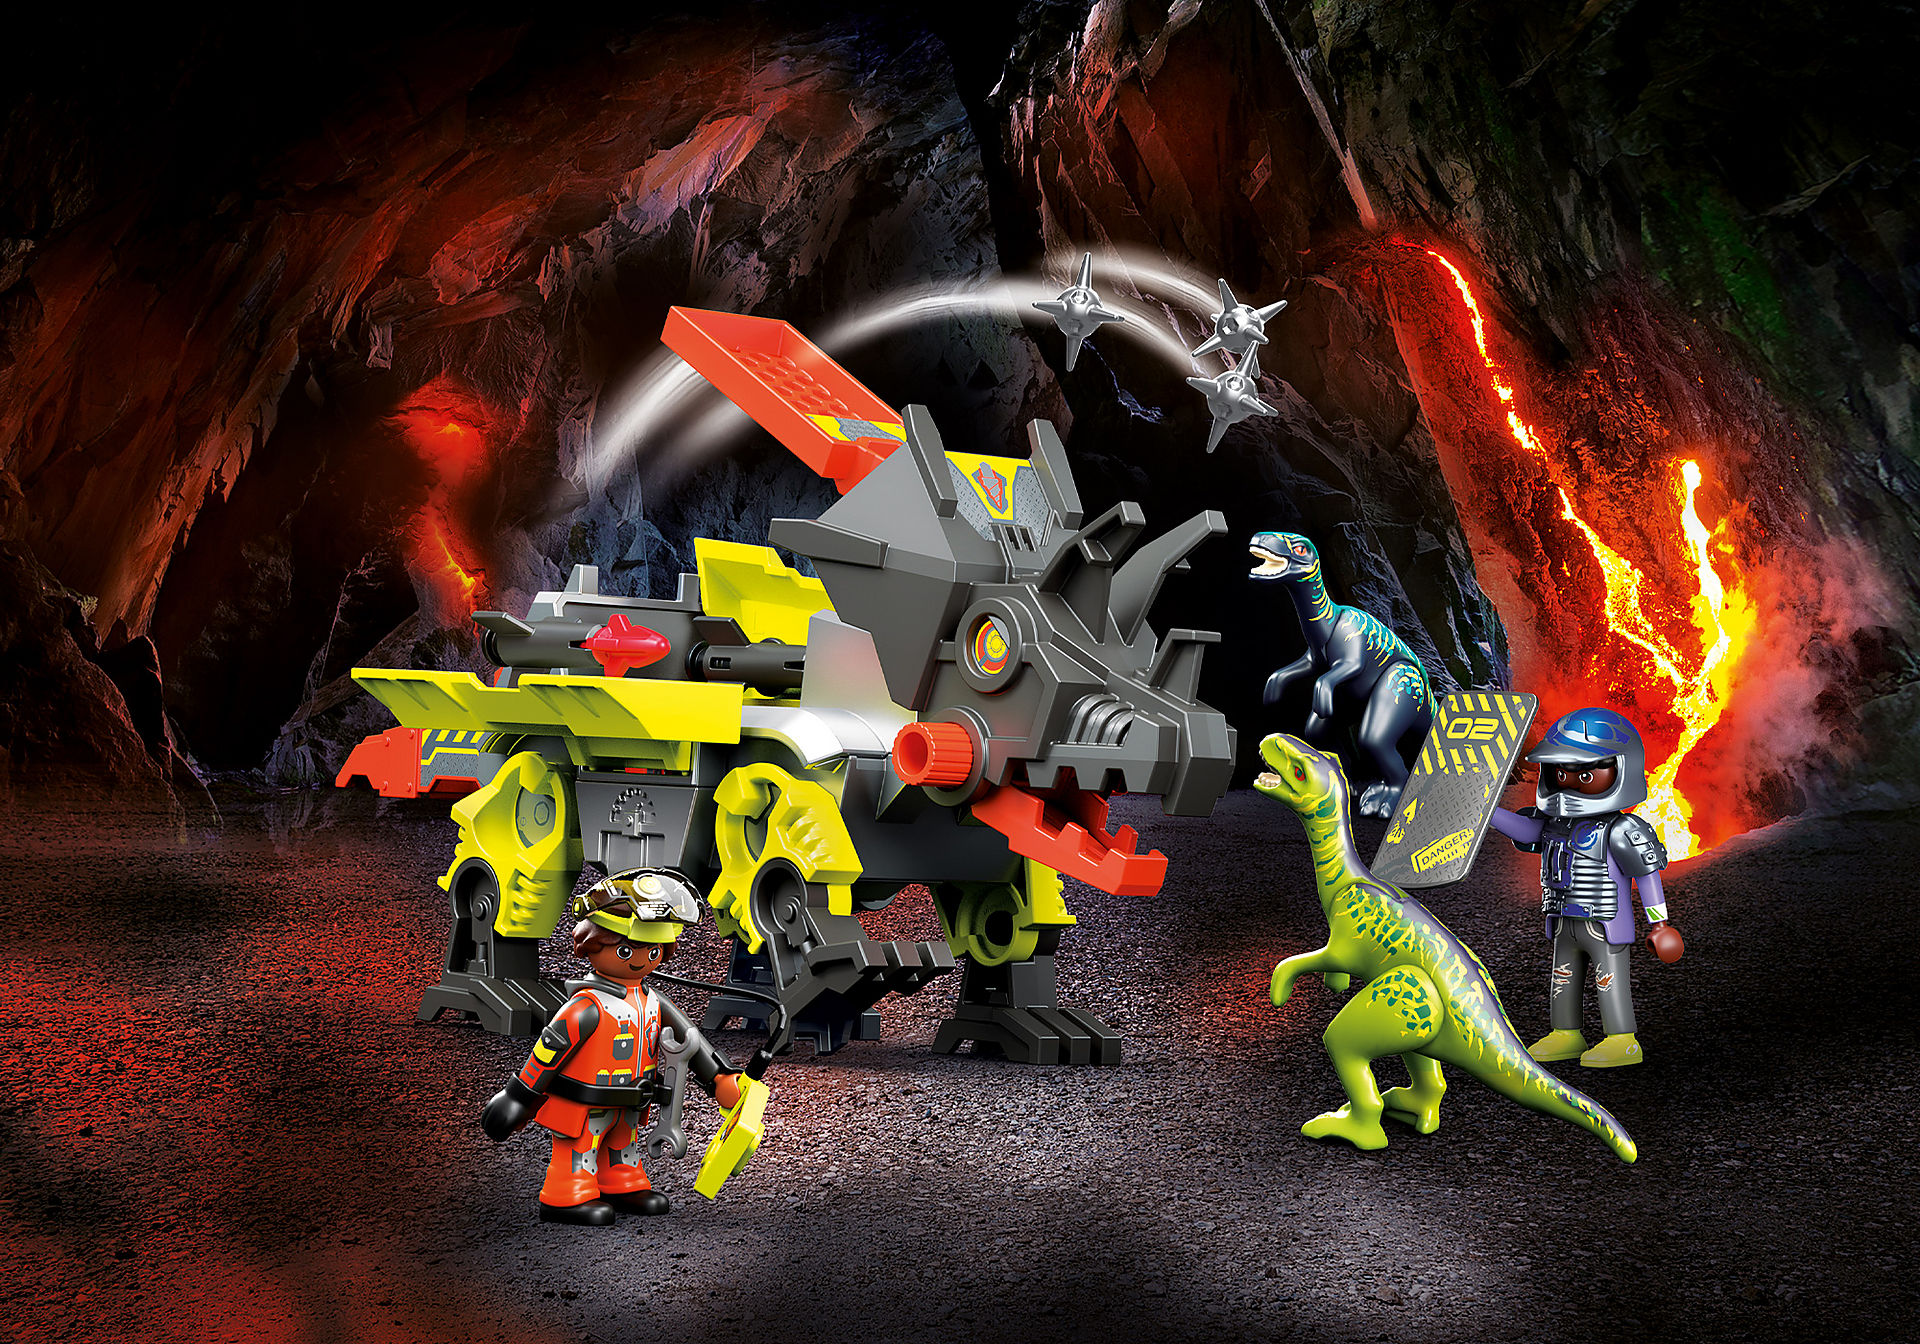 Playmobil Dino Rise Triceratops: Disturbios por las Piedras